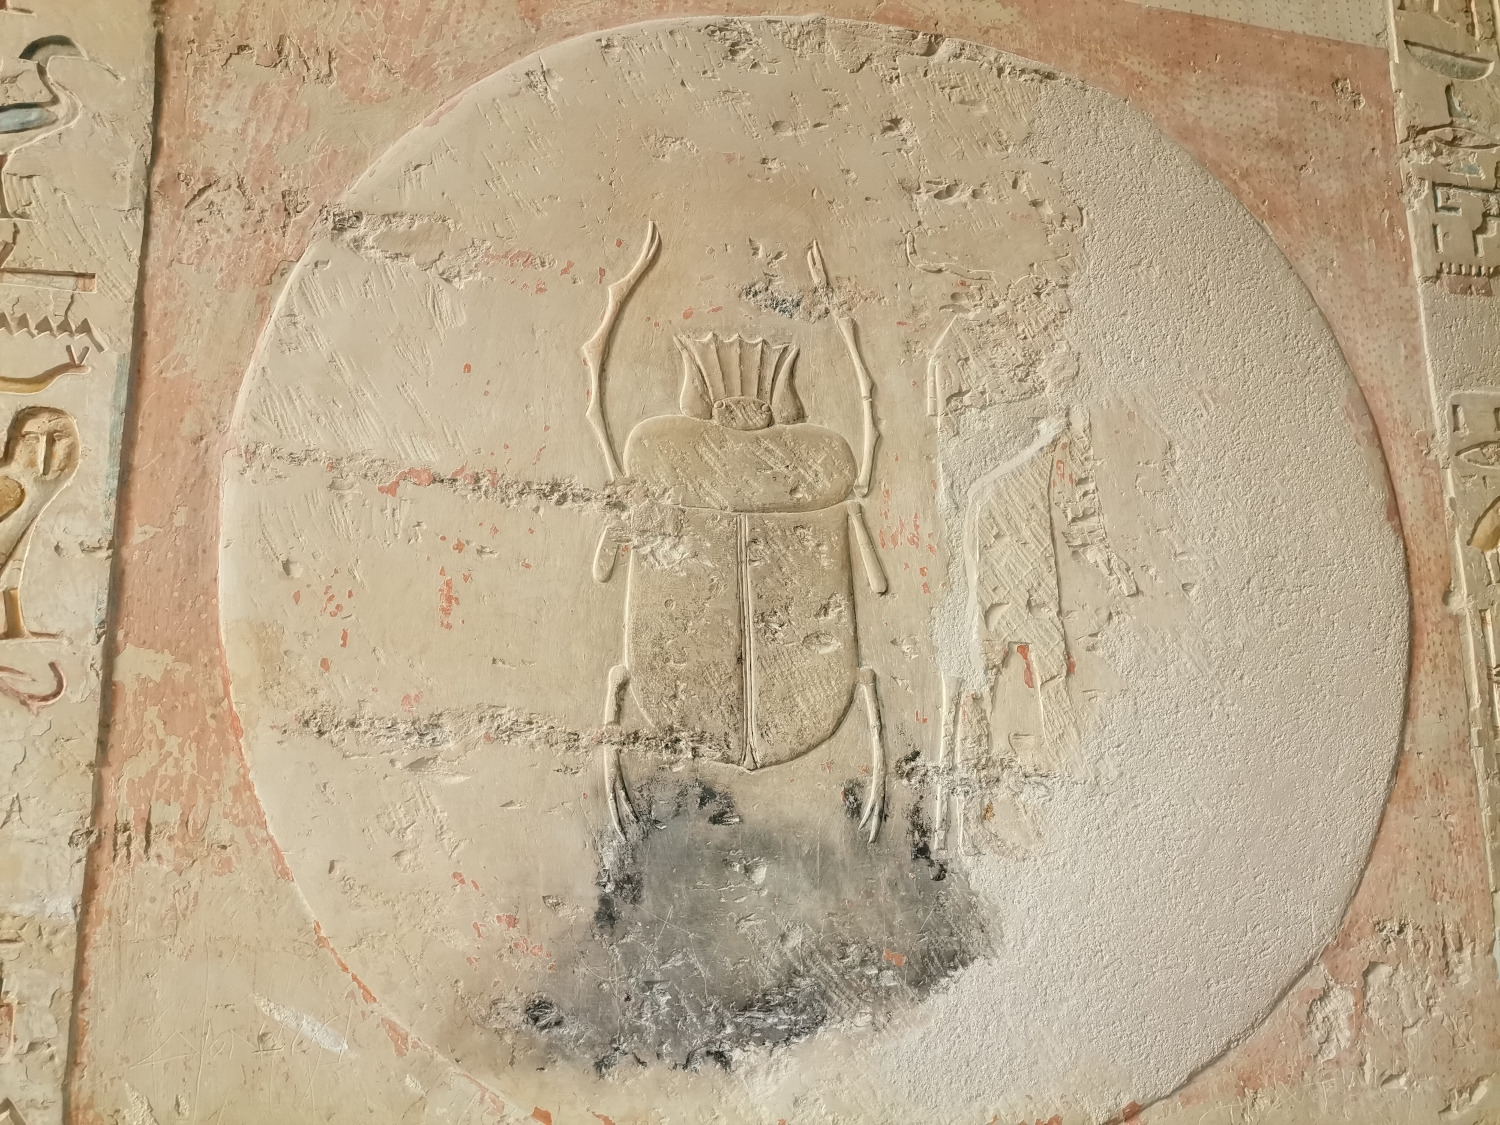 
Скарабей на стене одной из гробниц в Долине царей